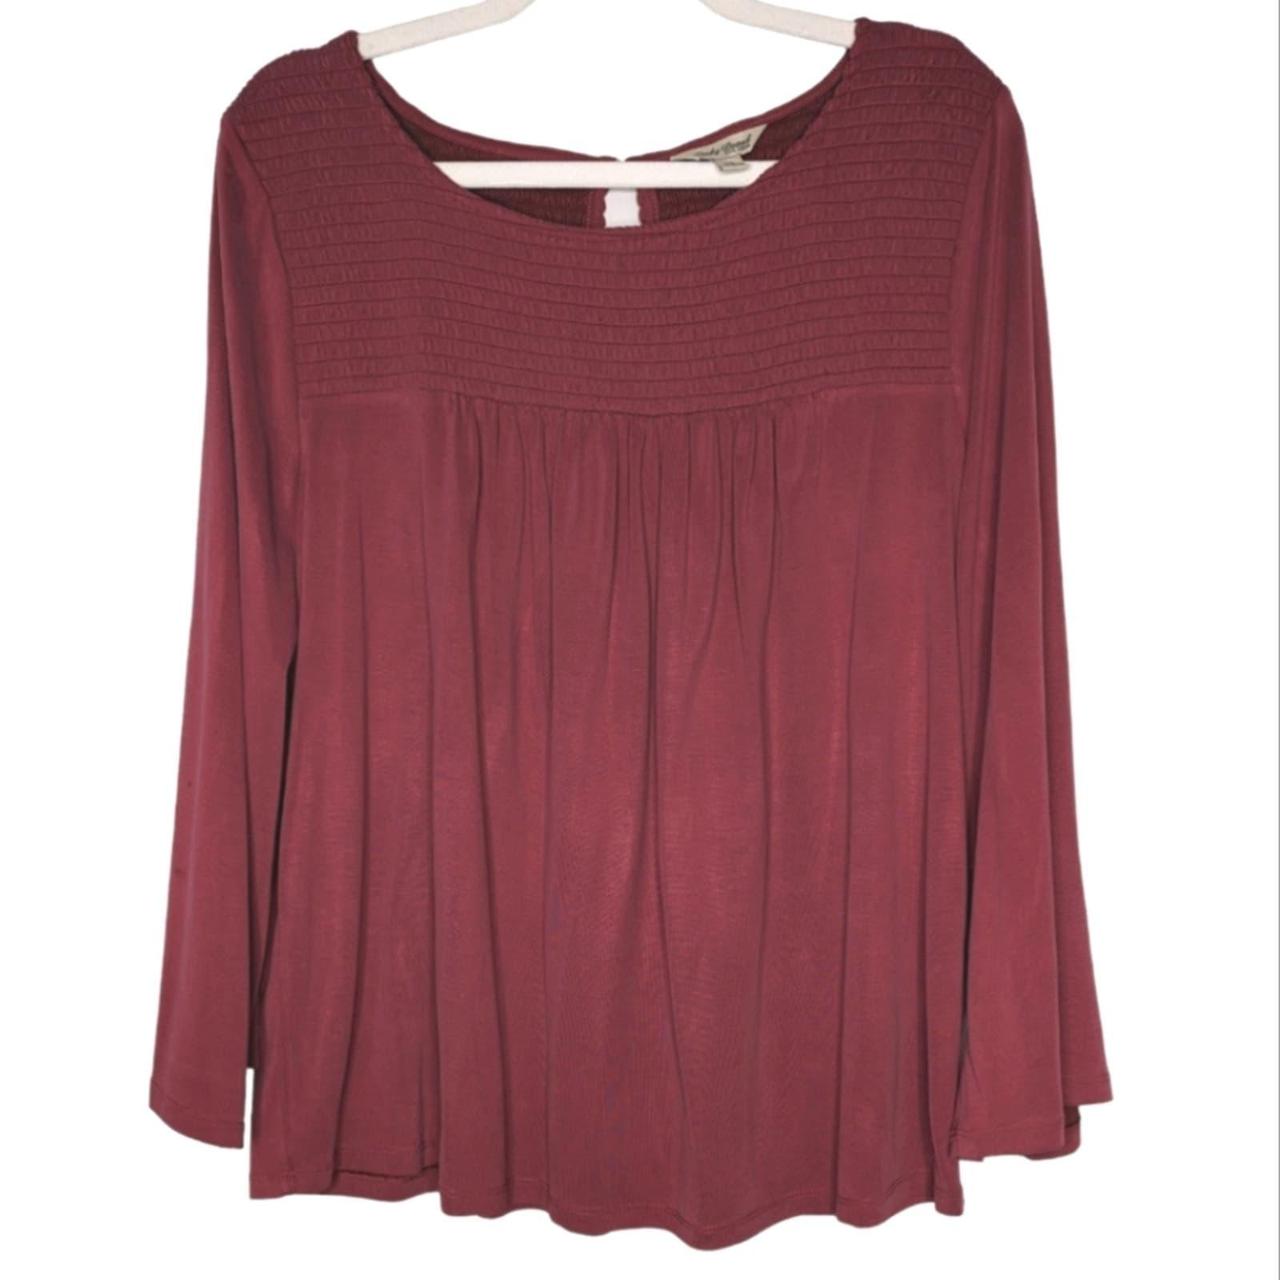 Lucky Brand Burgundy Long Sleeve Blouse Shirt Women's Size Medium